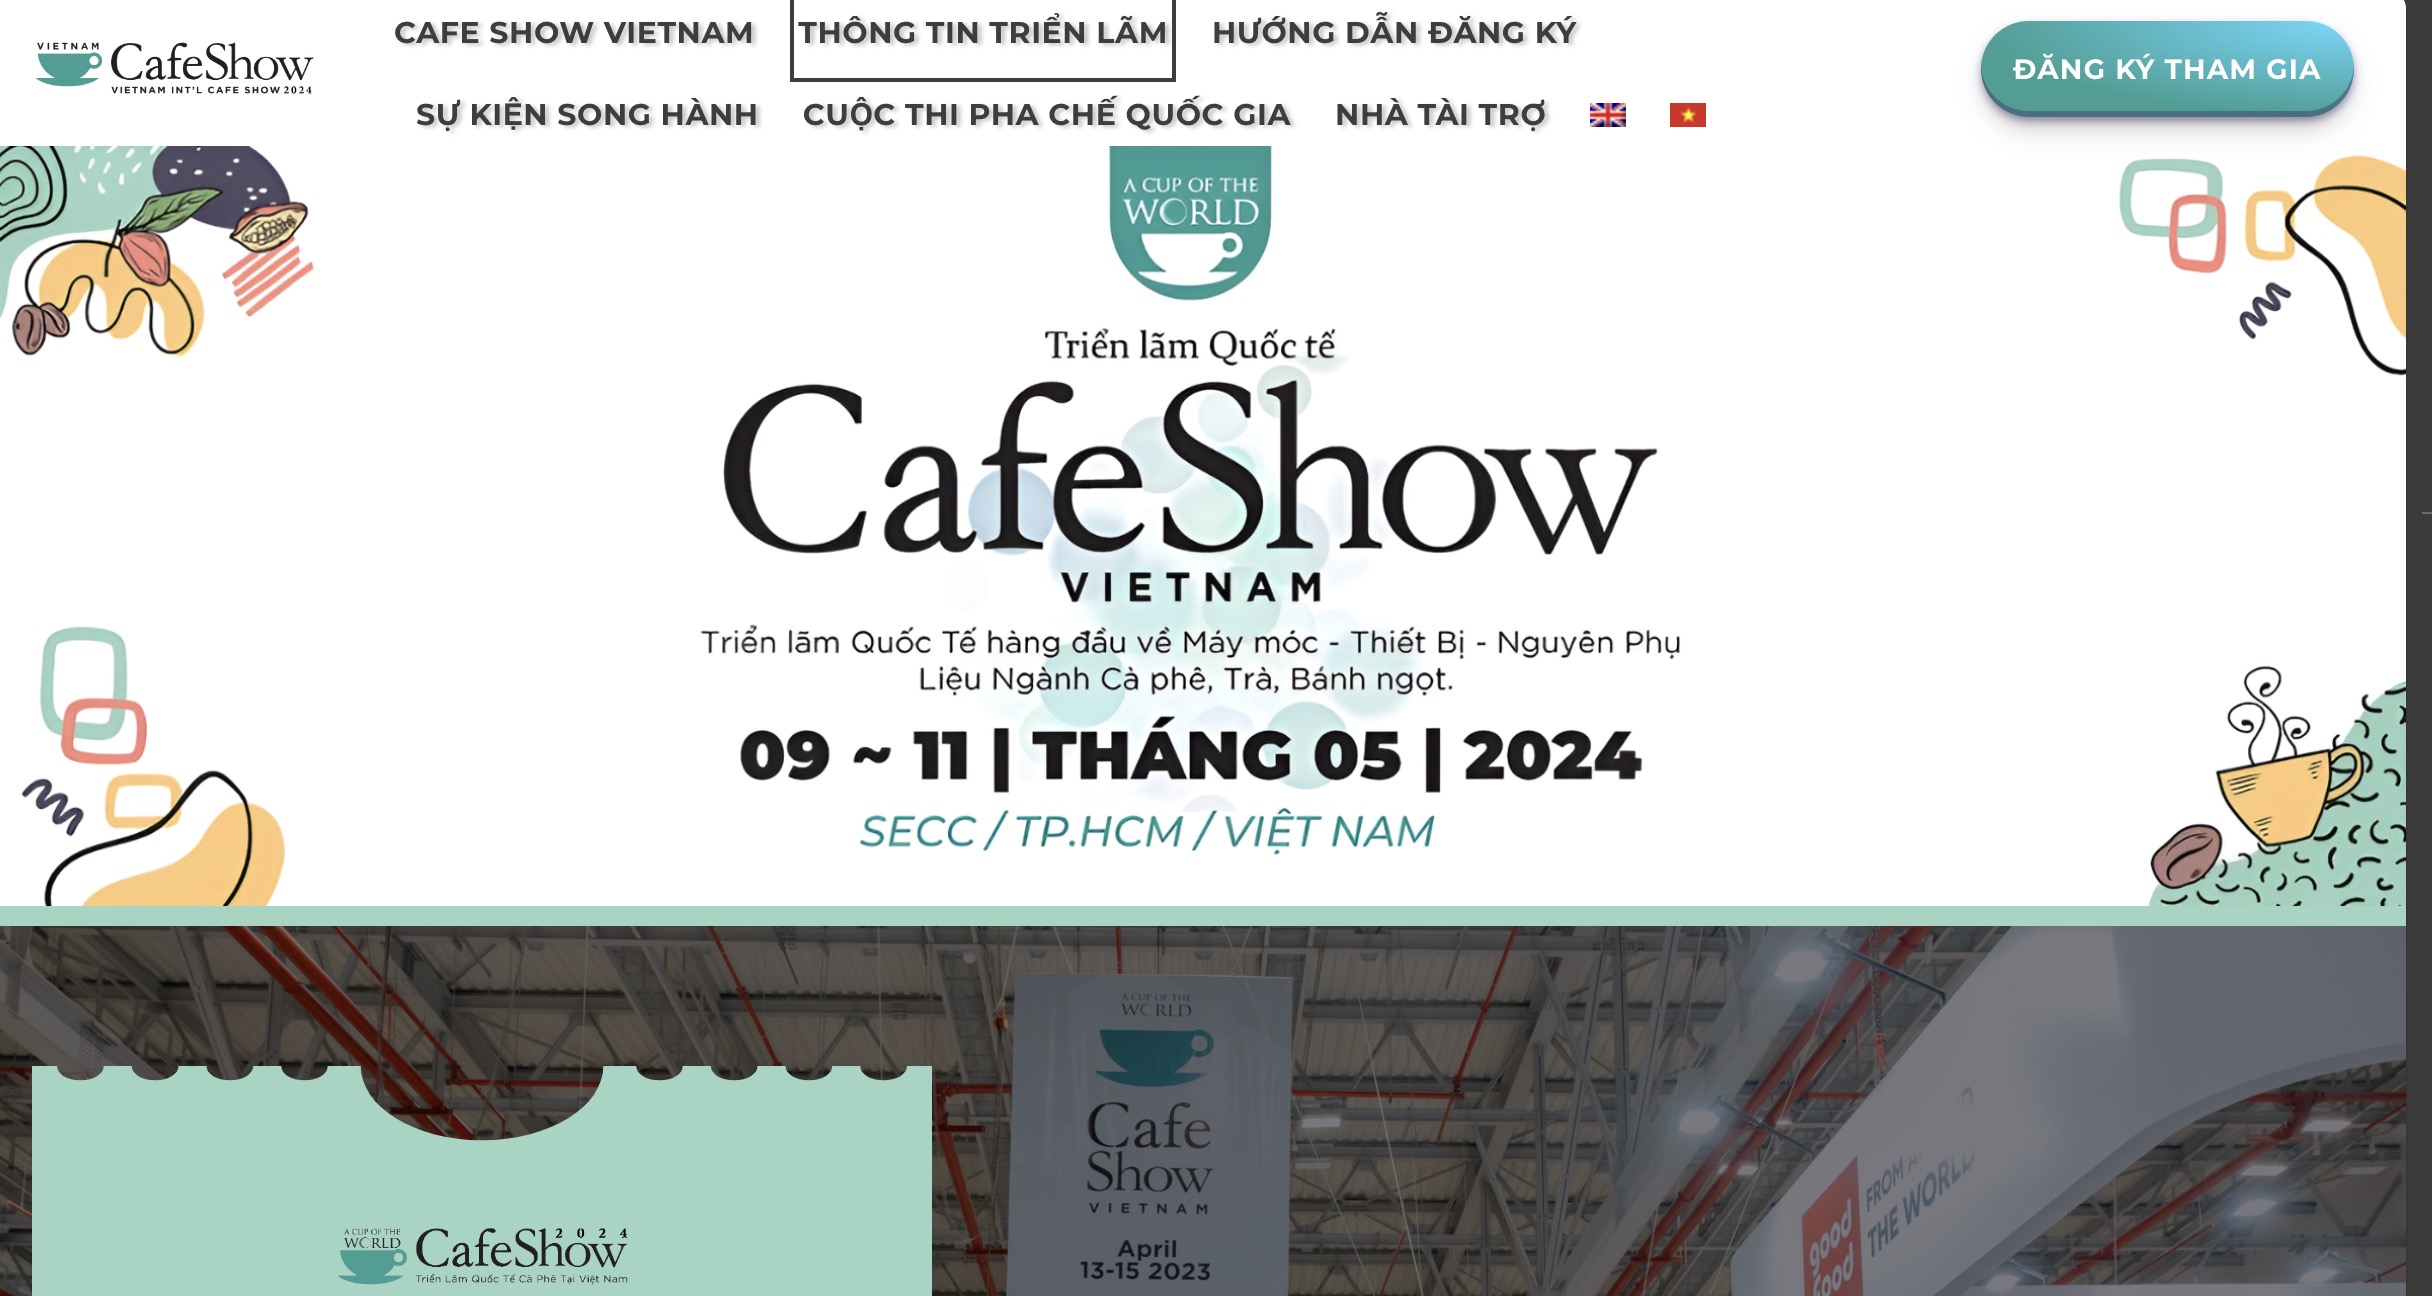 Rủ anh em đi Cafe Show Vietnam 9-11/5/2024 ở SECC Quận 7, HCM